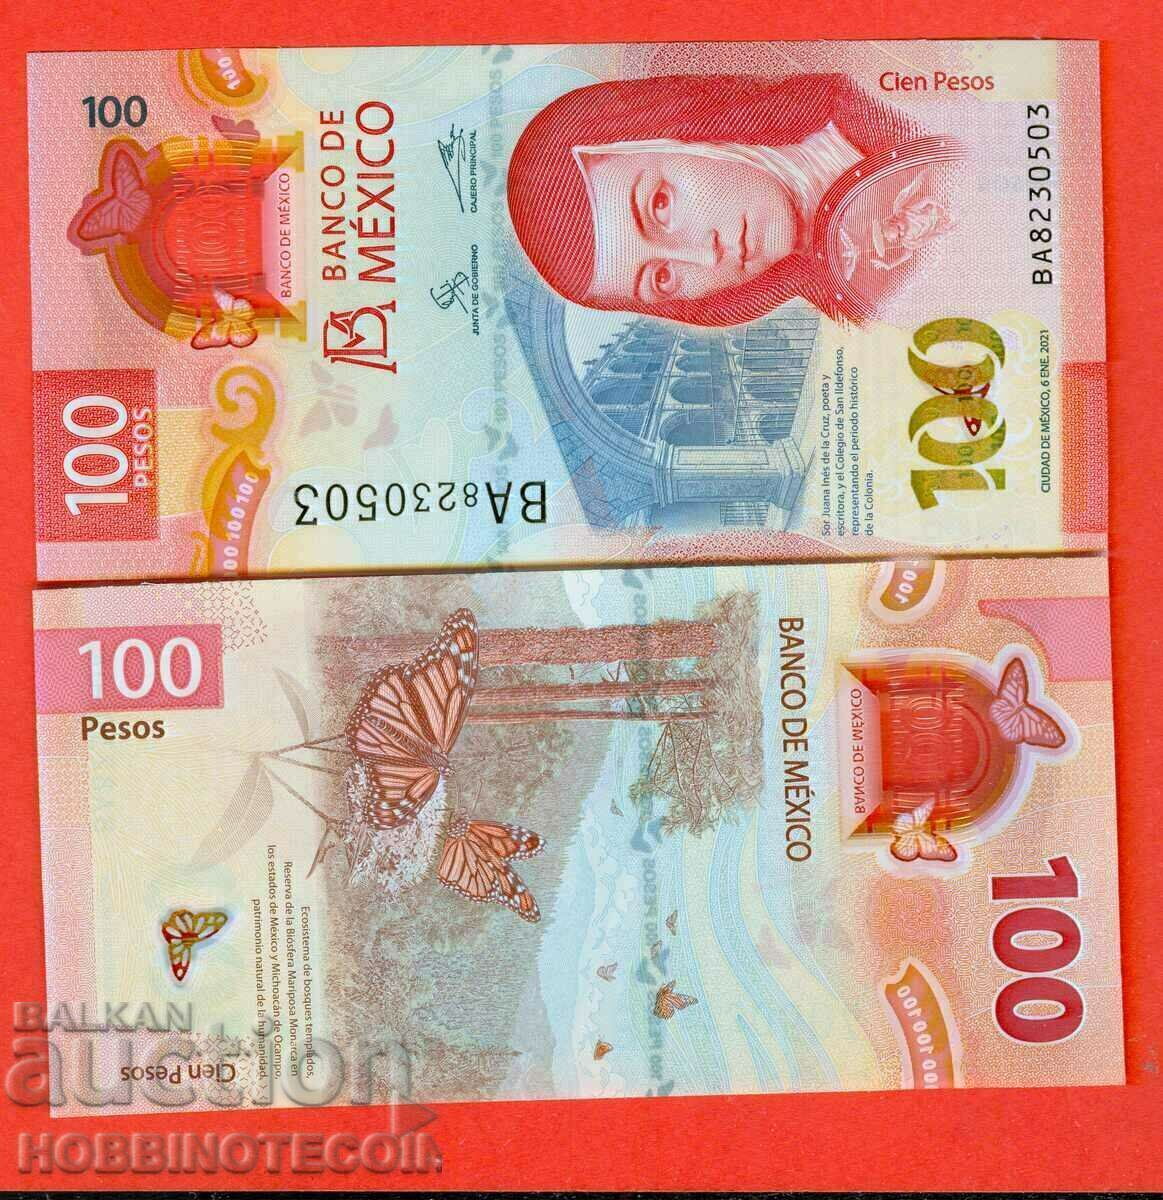 MEXICO MEXICO 100 Peso - έκδοση 2021 NEW UNC POLYMER κάτω από 2